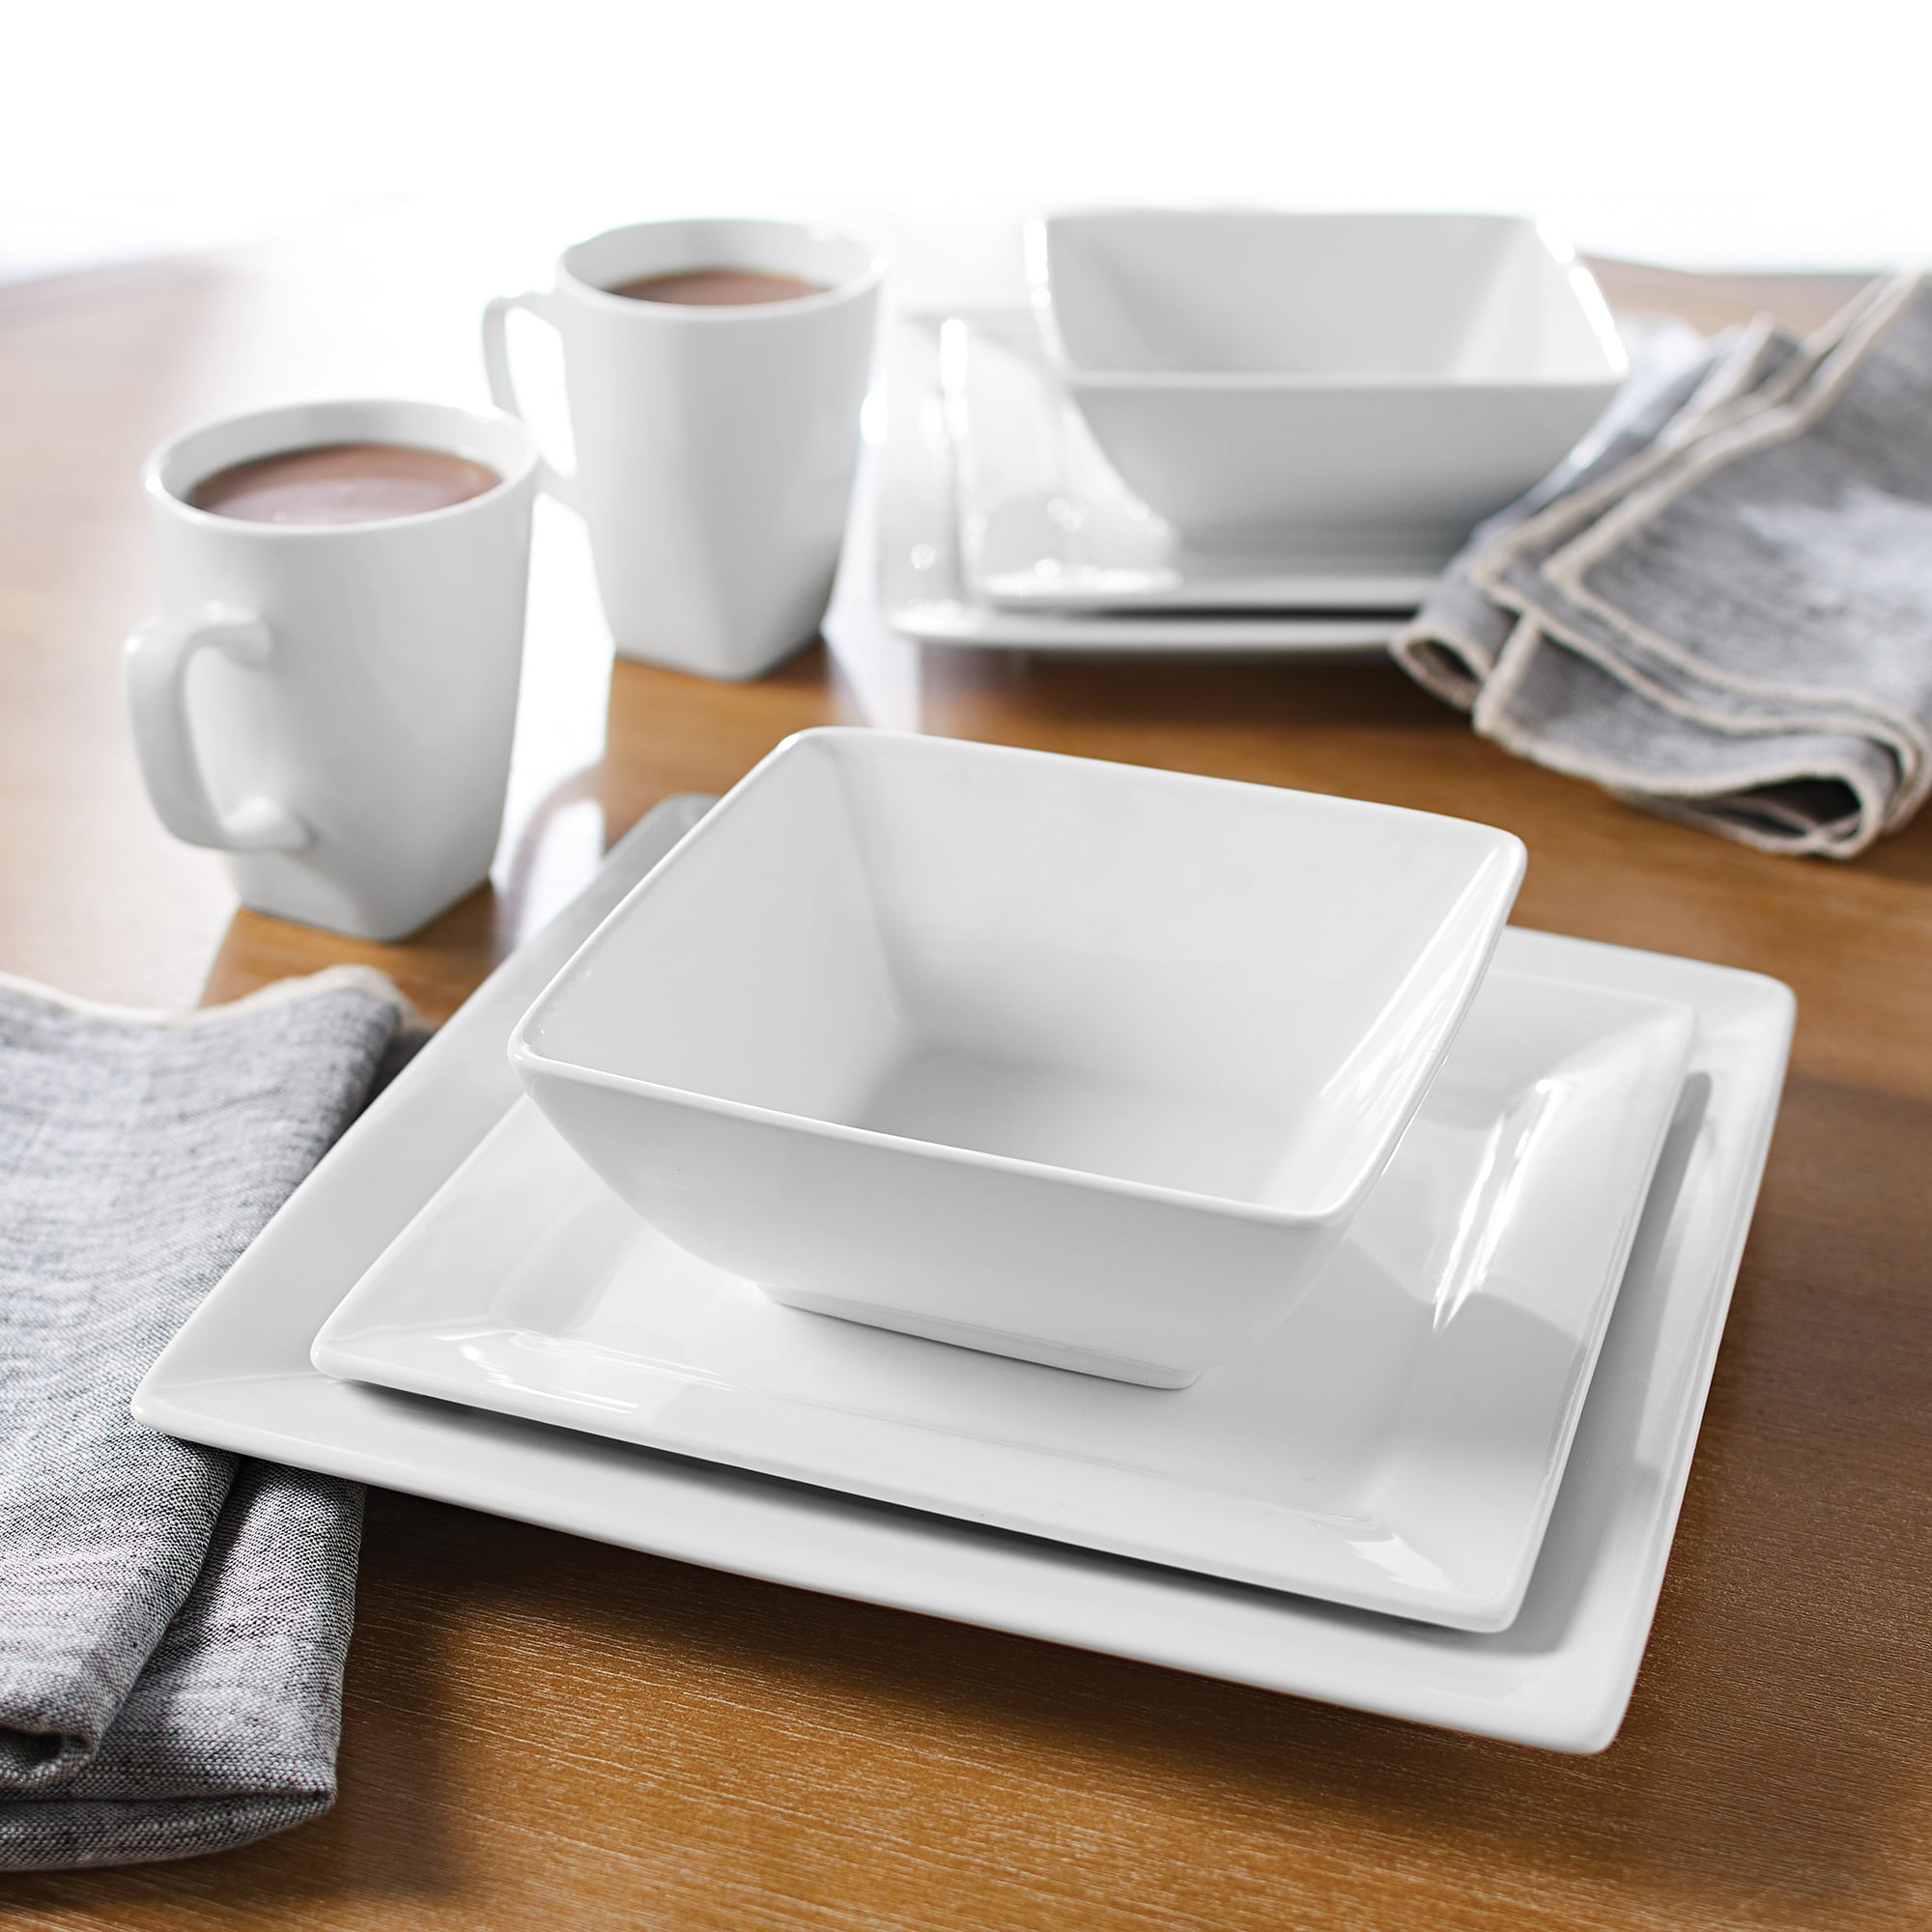 Dinnerware Set 16 Piece White Porcelain Savion Square Microwave